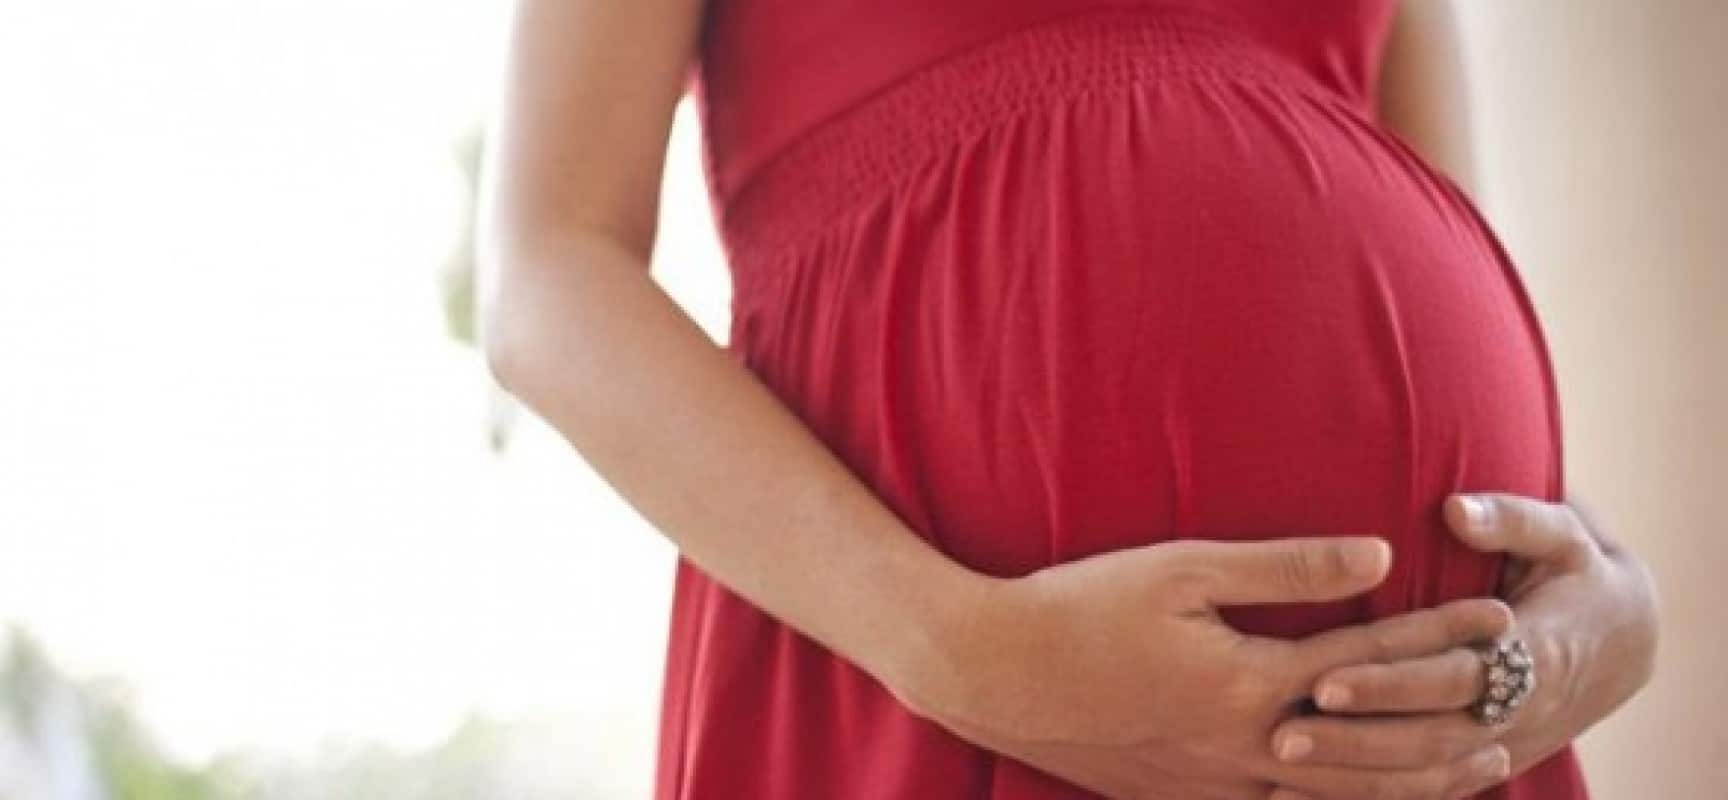 شكل بطن الحامل ببنت او ولد بالصور طرق معرفة نوع الجنين من خلال الام احلى كلام